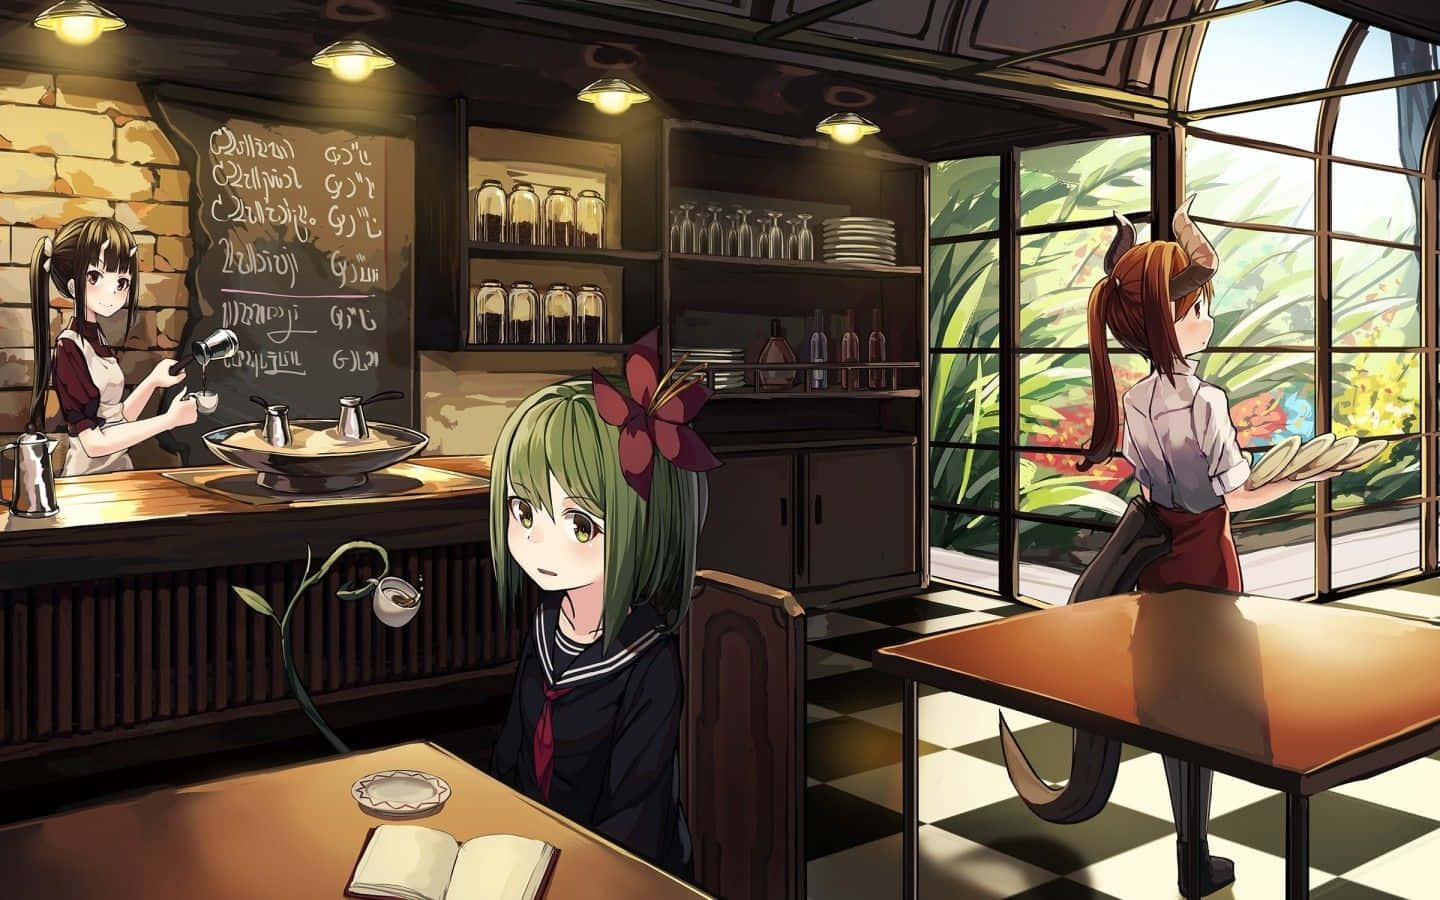 Comvontade De Tomar Um Café Em Uma Atmosfera Única? Visite O Cafe Anime, Que Agora Serve Suas Bebidas Favoritas Em Um Ambiente Vibrante Inspirado Em Anime! Papel de Parede